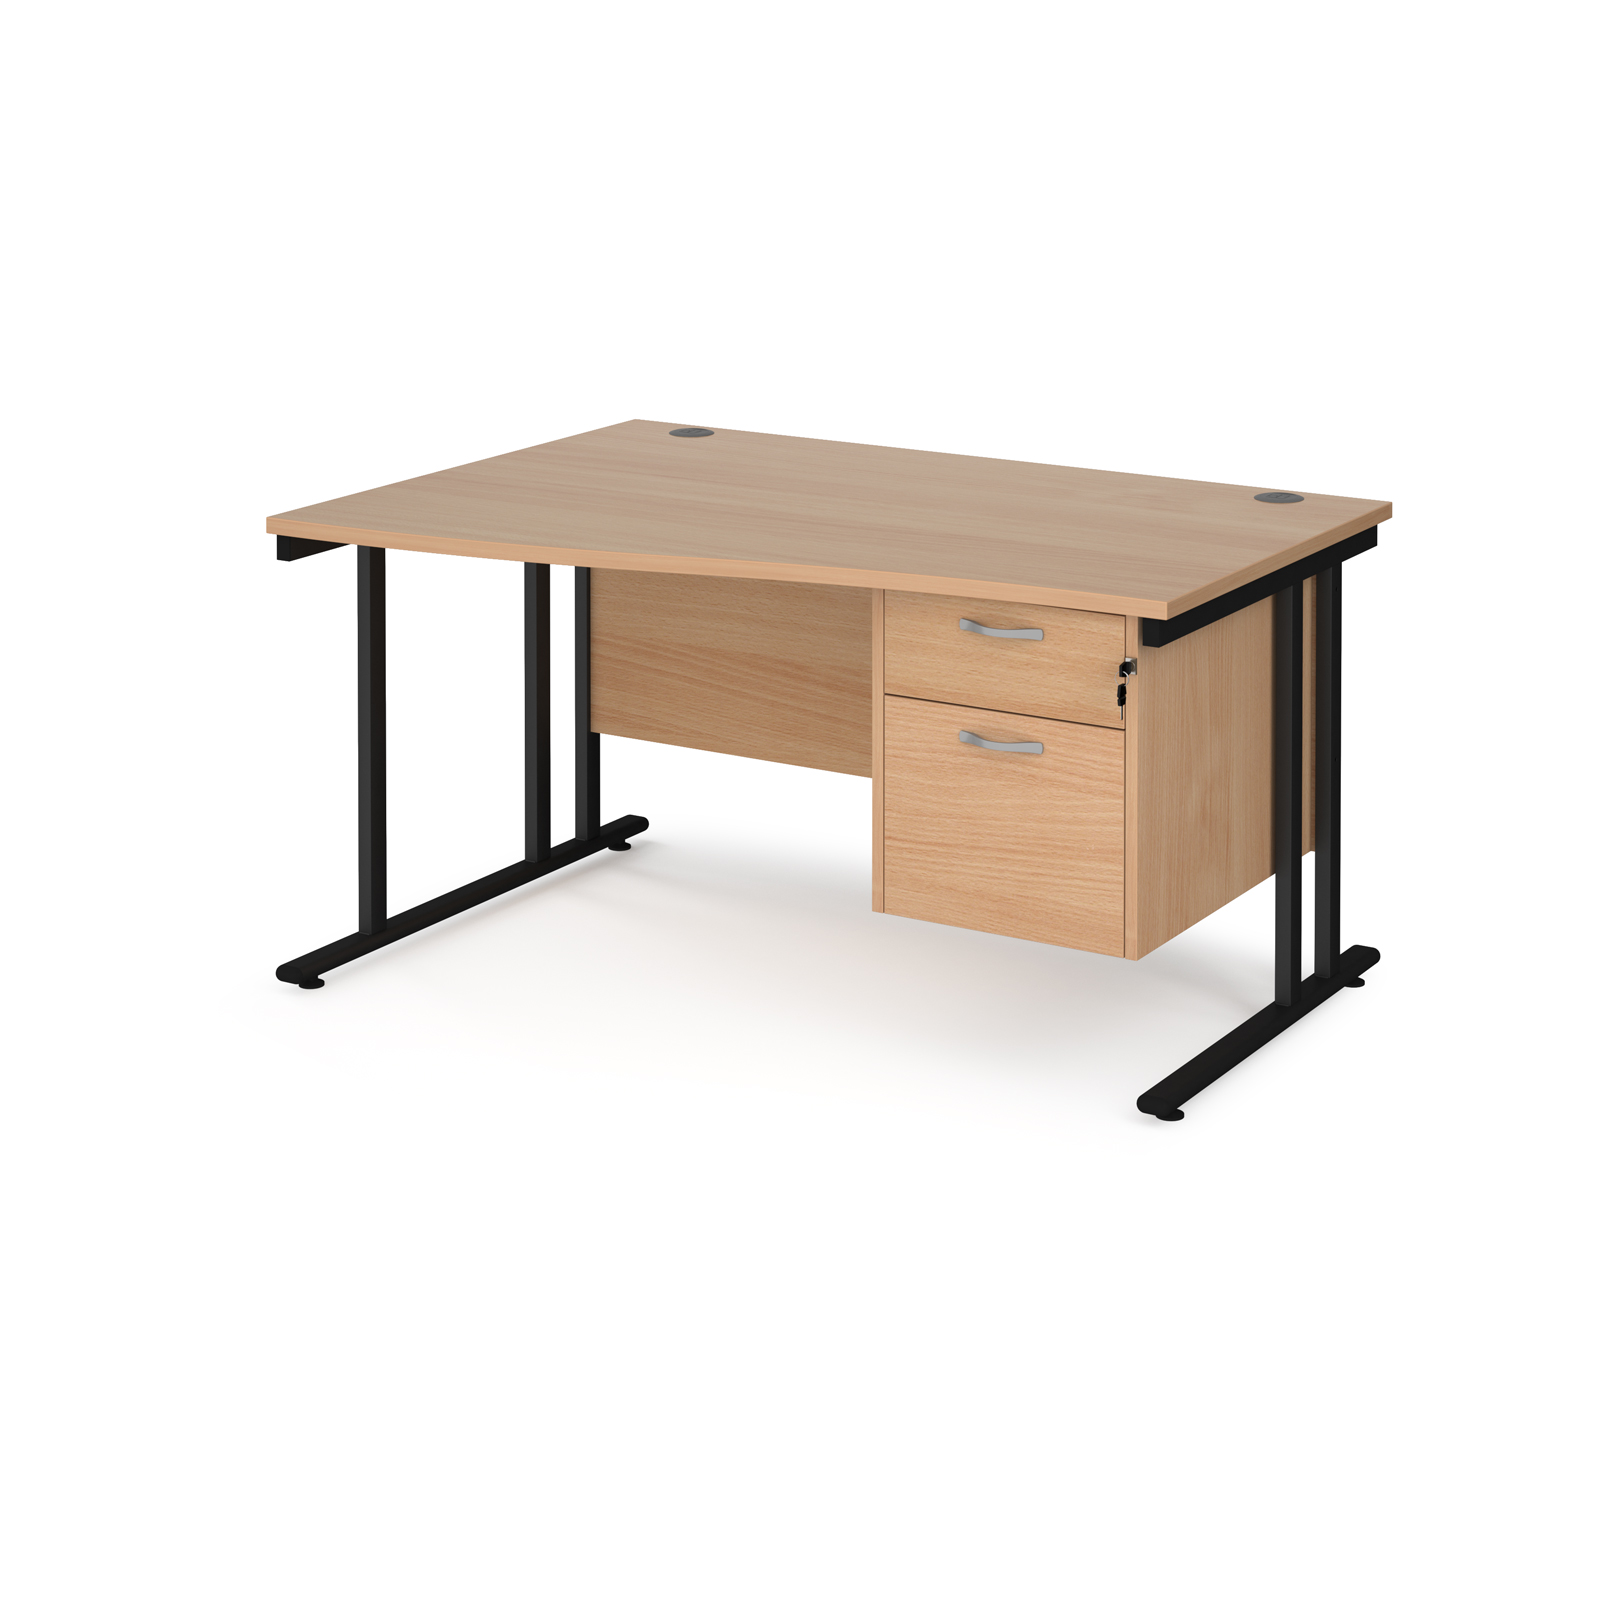 Maestro 25 left hand wave desk 1400mm wide with 2 drawer pedestal - black cantilever leg frame, beech top